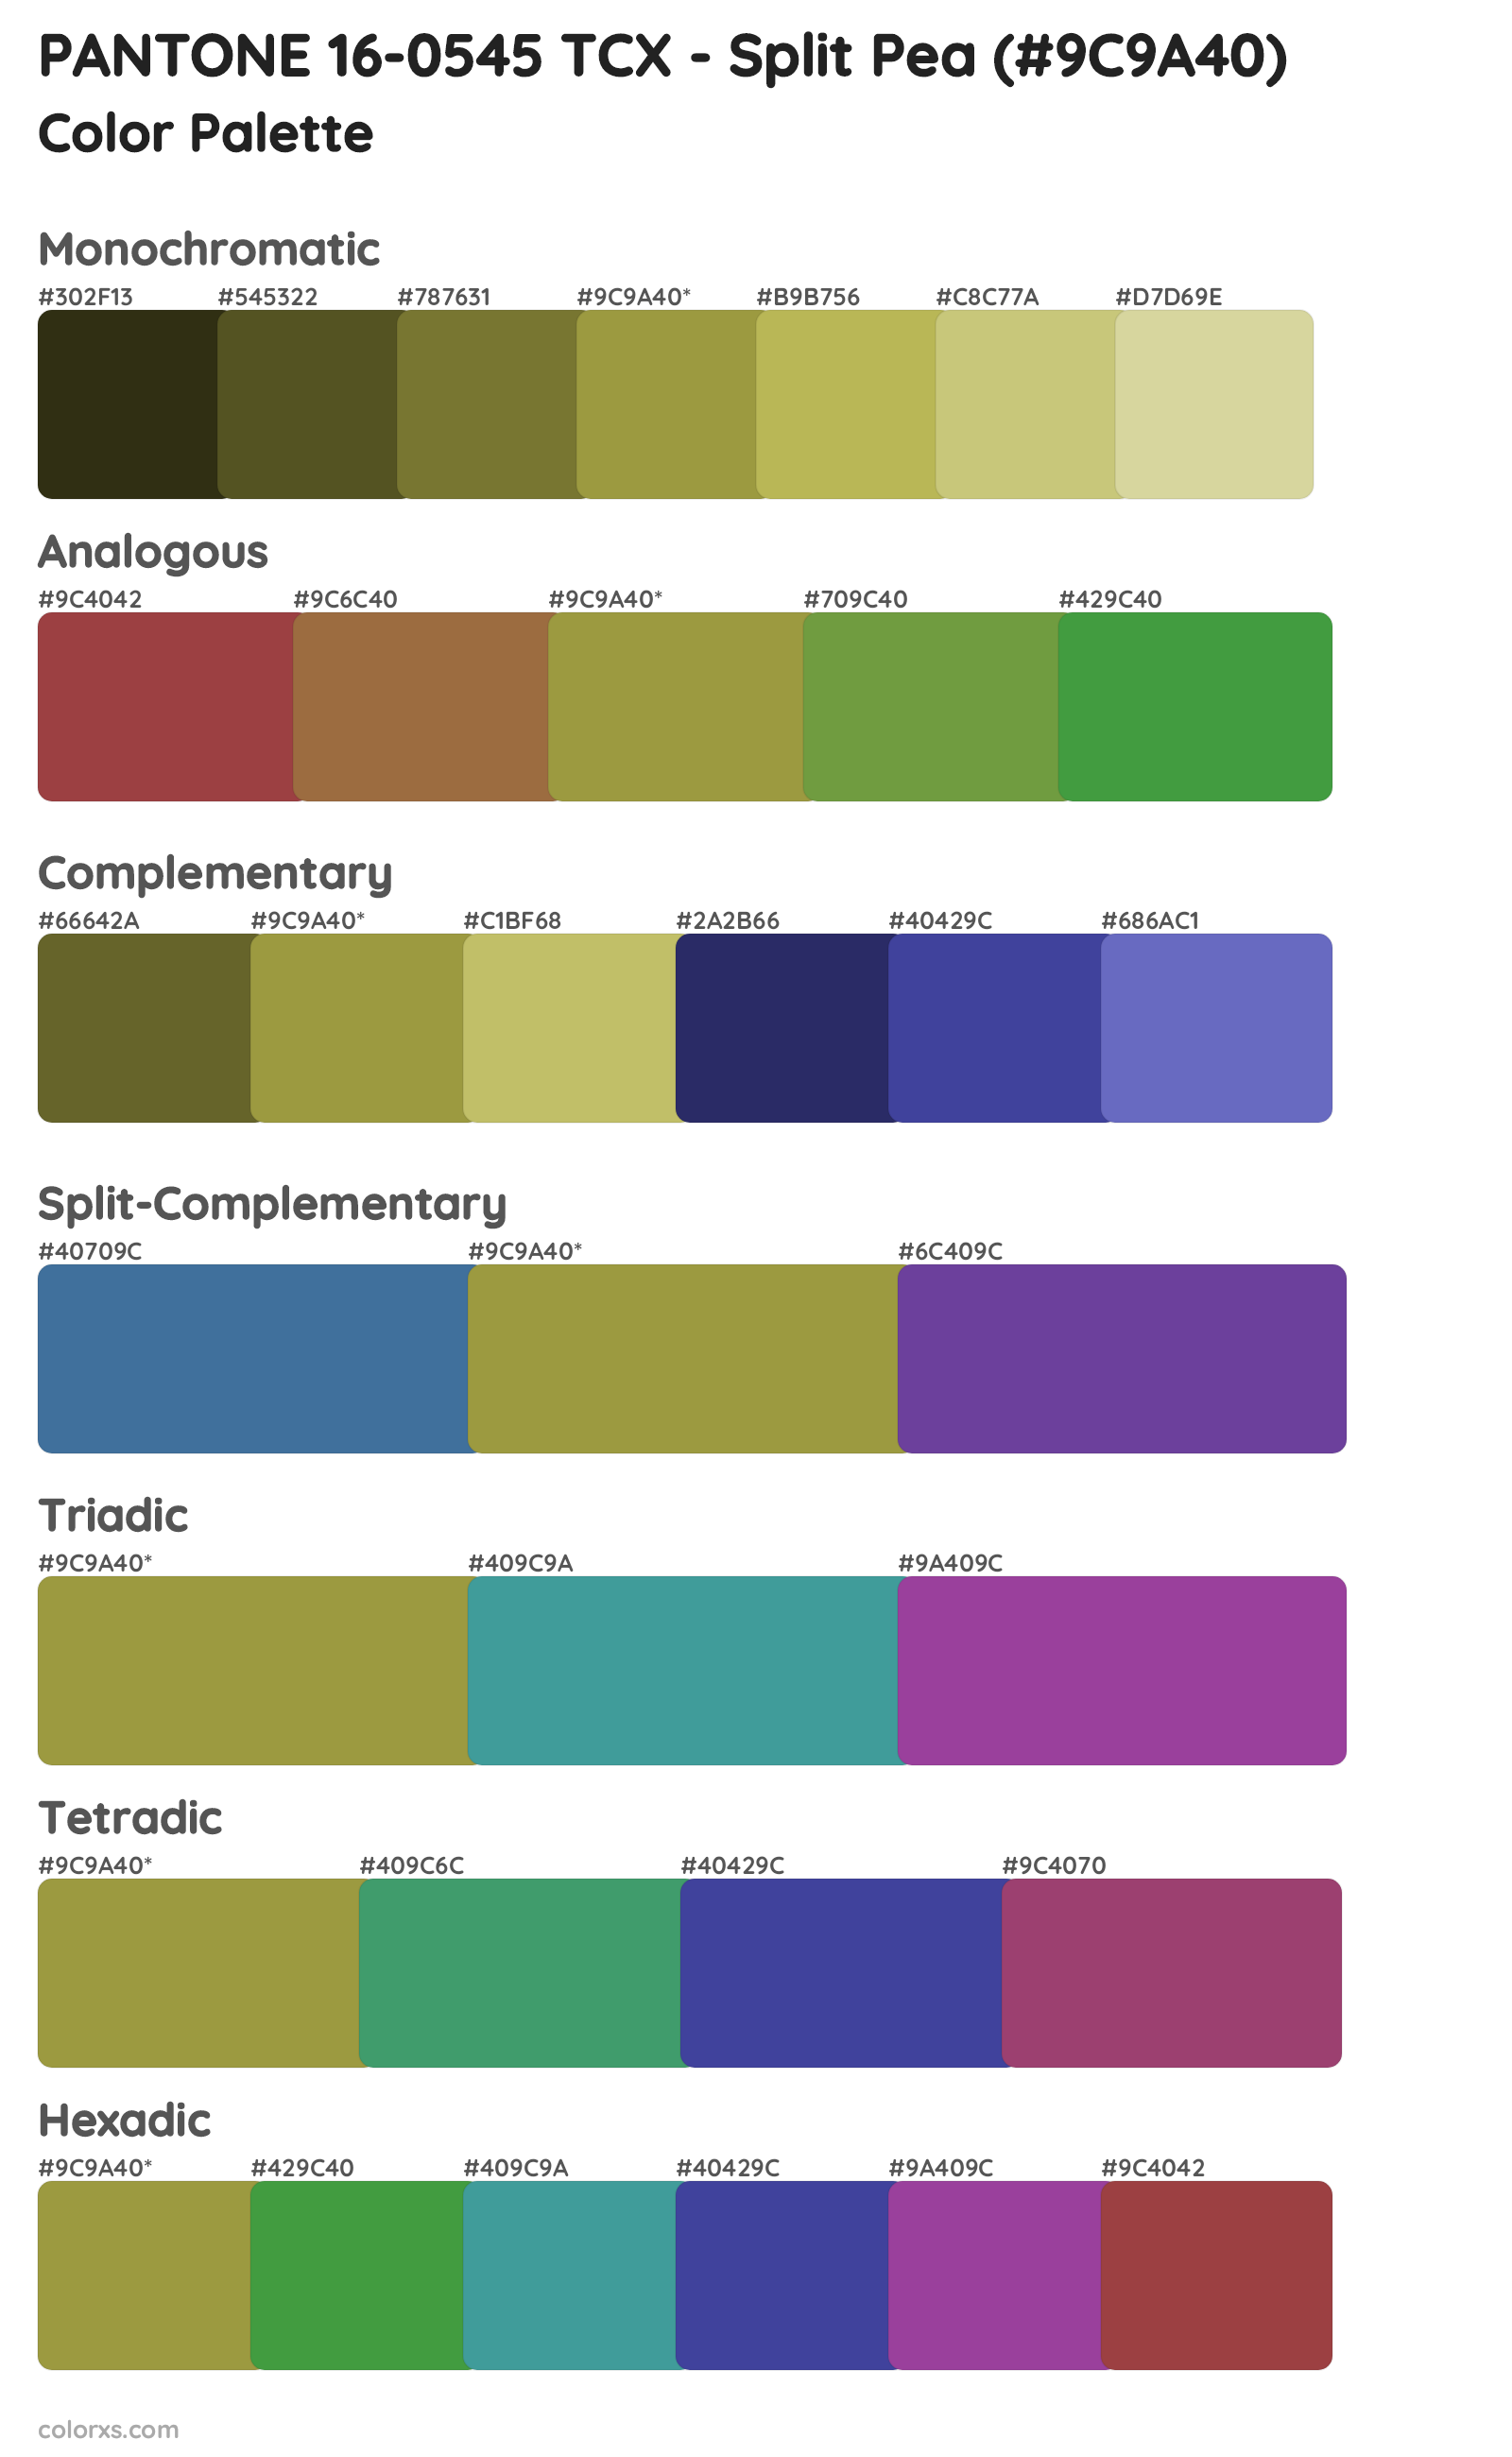 PANTONE 16-0545 TCX - Split Pea Color Scheme Palettes